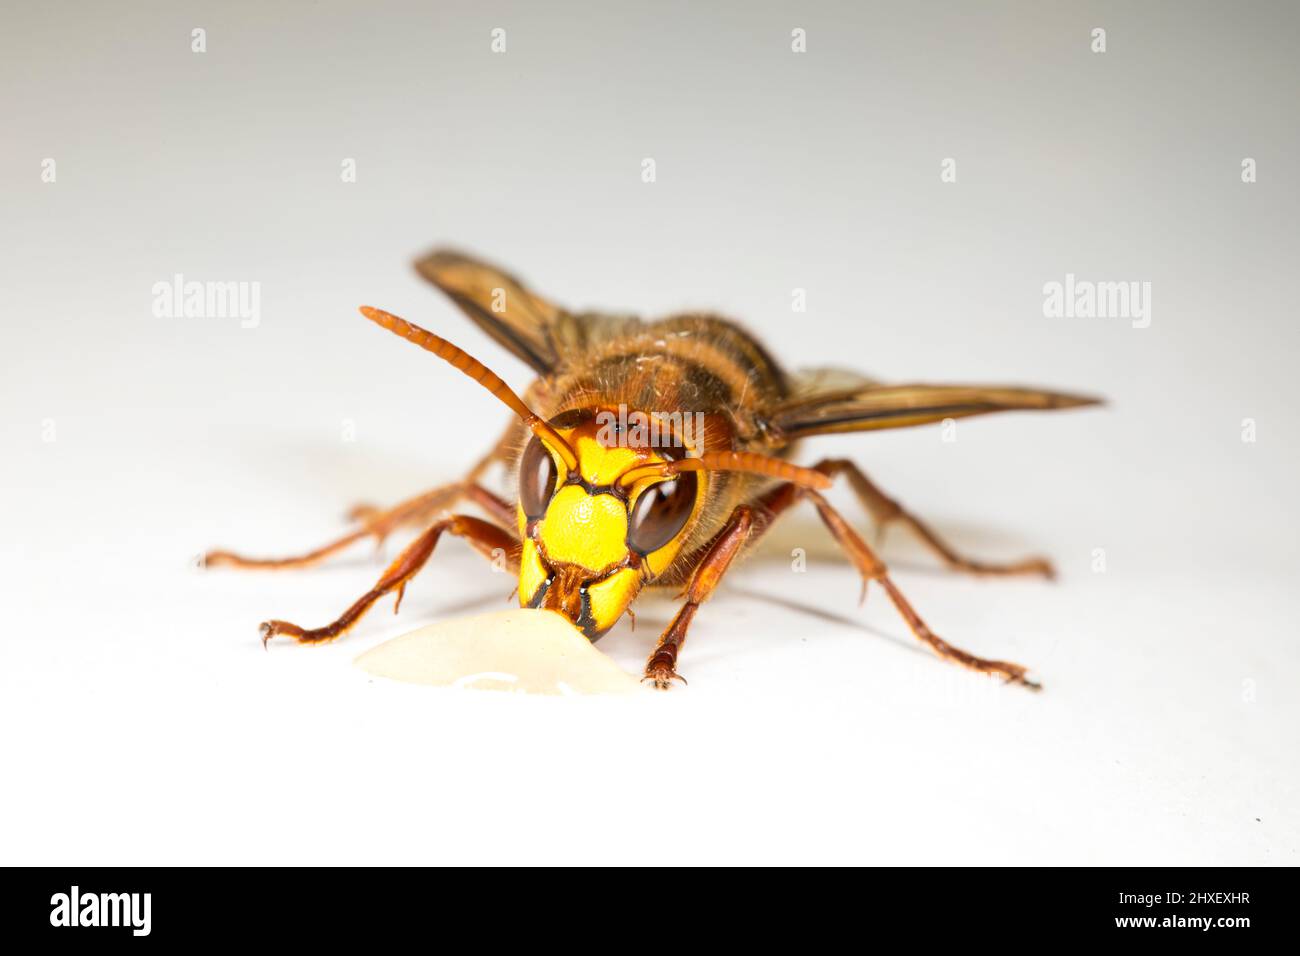 European Hornet (Vespa crabro) operaio adulto fotografato su sfondo bianco. Powys, Galles. Settembre. Foto Stock